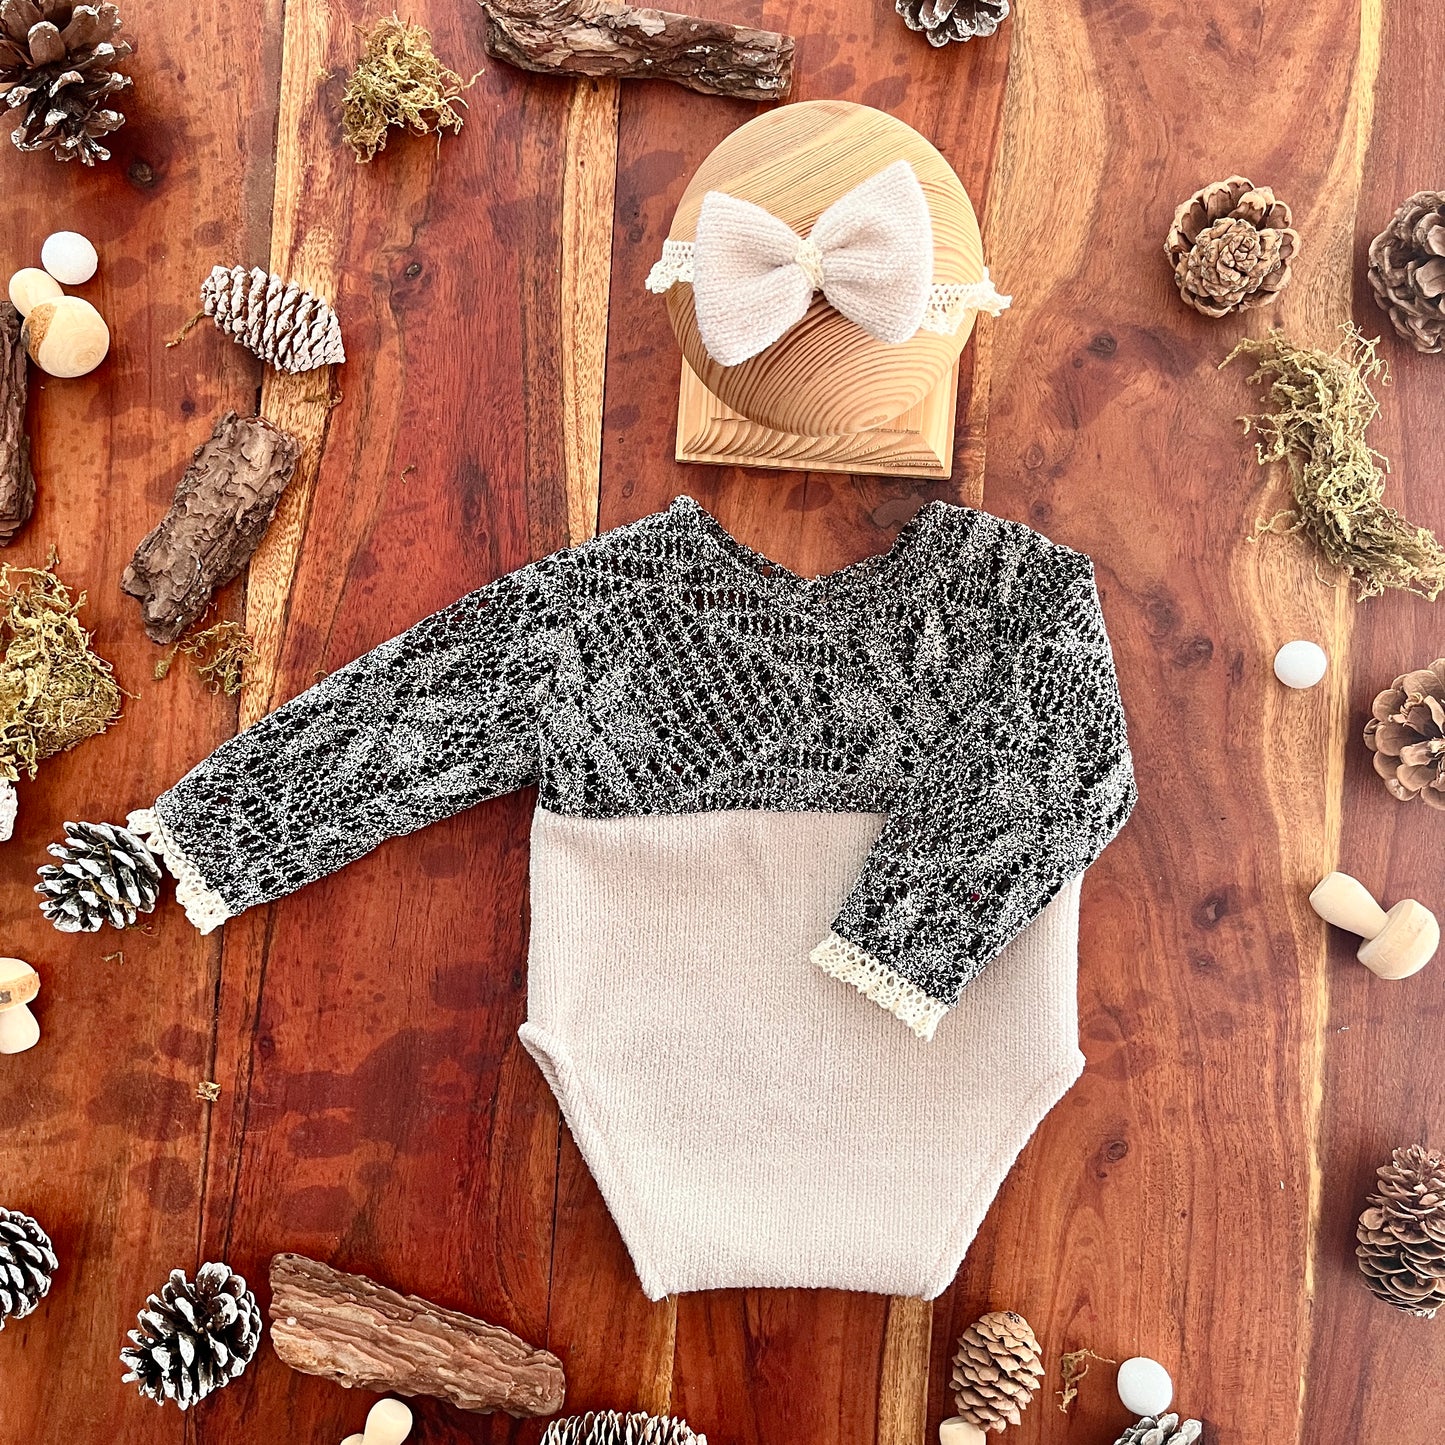 Popy Neugeborenen-Fotografie-Requisiten-Outfit für Mädchen